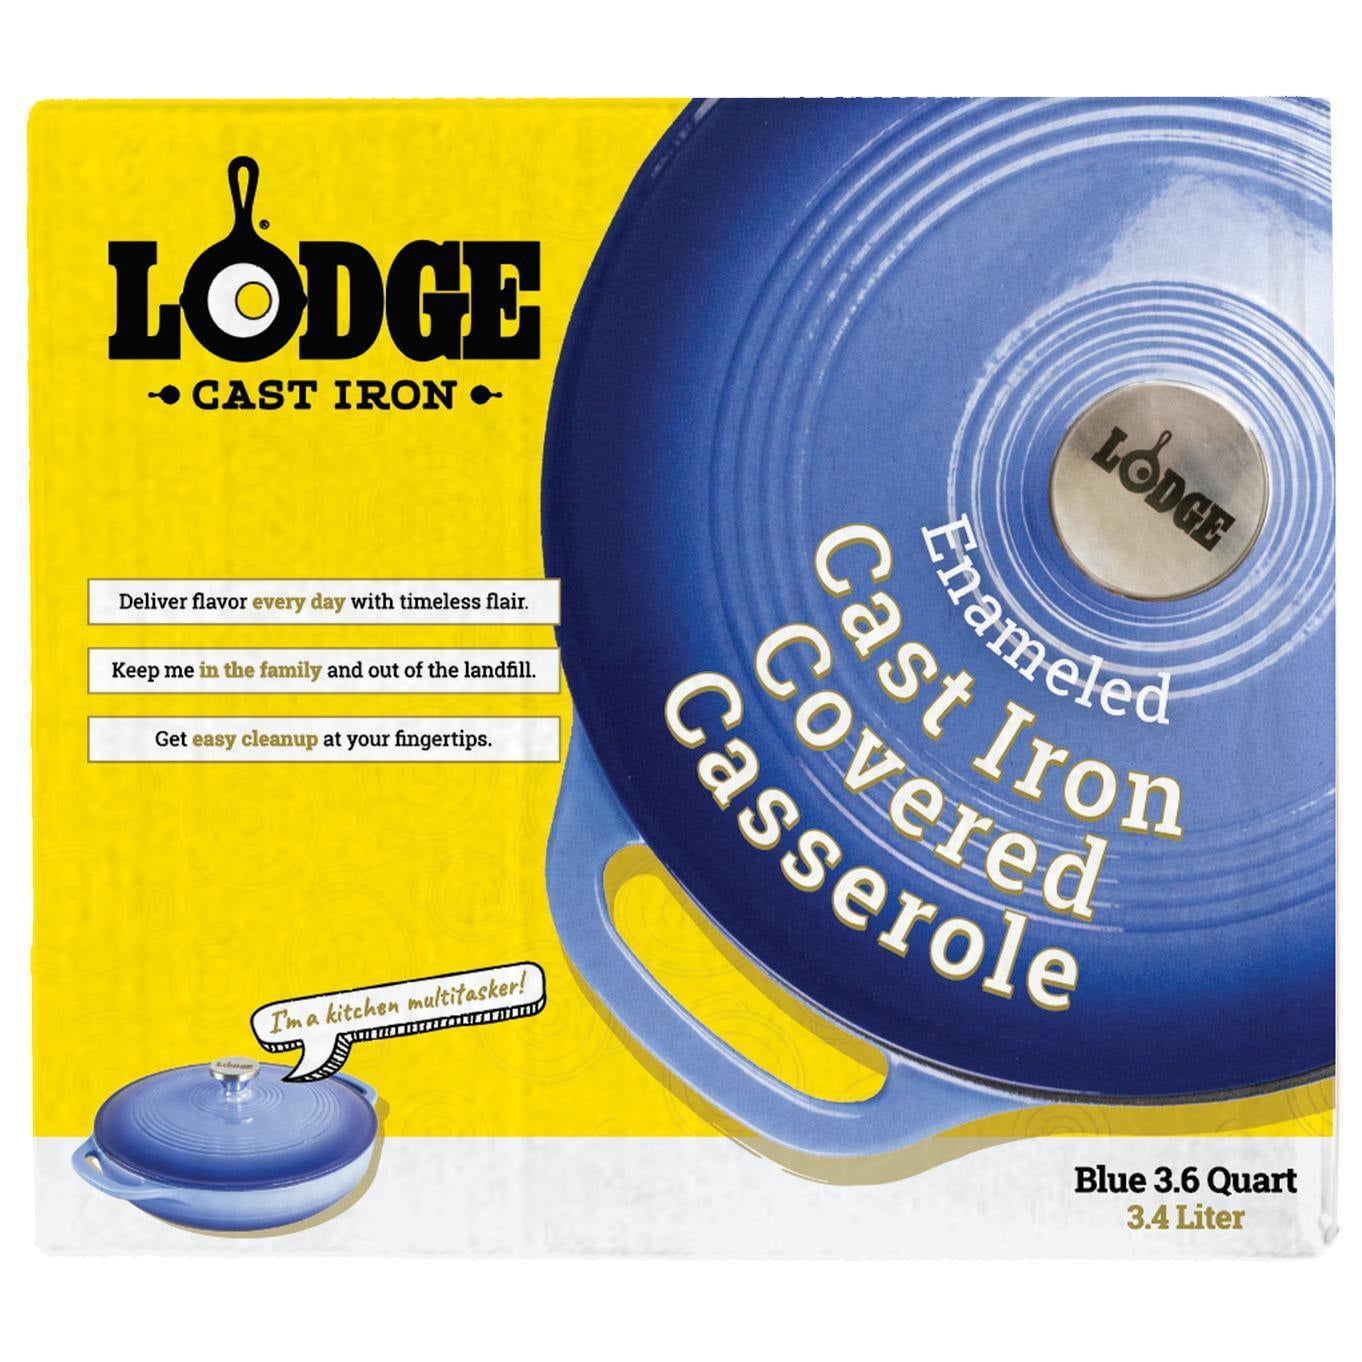 Lodge 3.6 Quart Enameled Cast Iron Casserole & Reviews